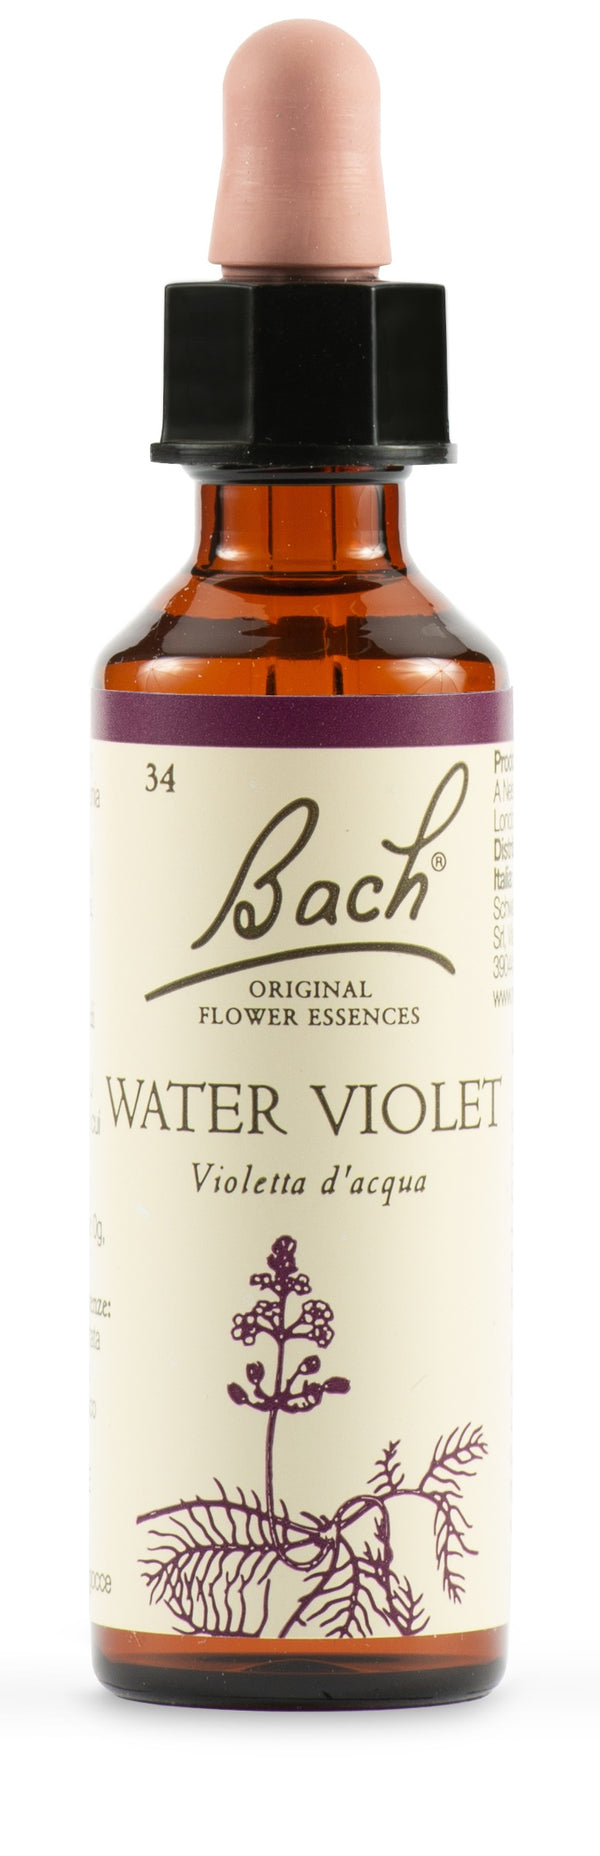 Water viol bach orig 20 ml